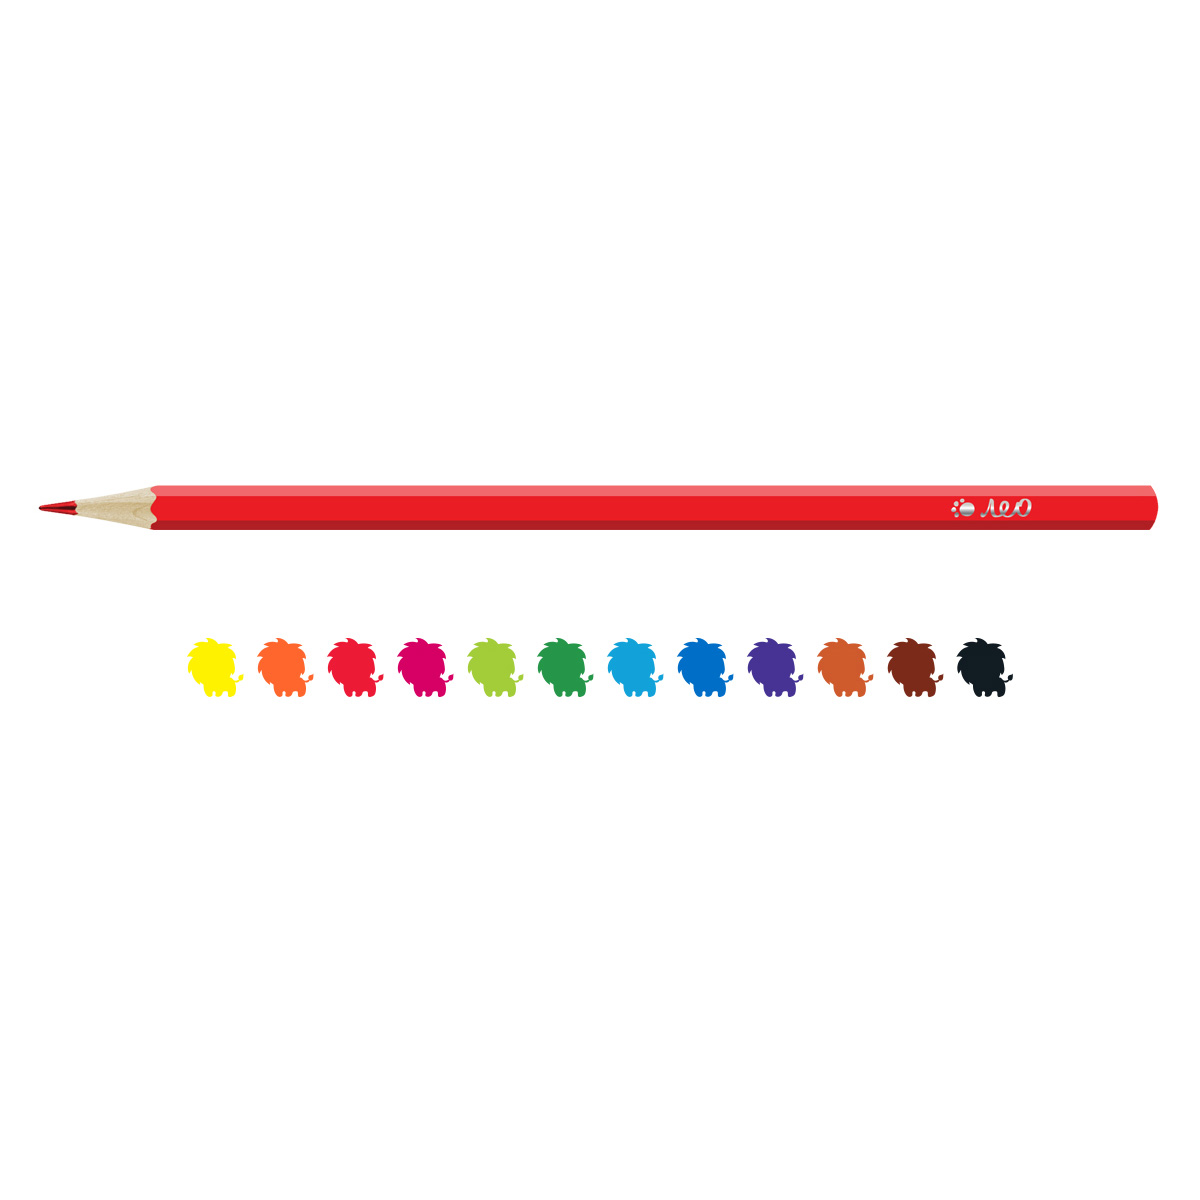 Набор цветных карандашей 12цв "Учись" LNSCP-12 | Магазин канцтоваров и игрушек Львёнок